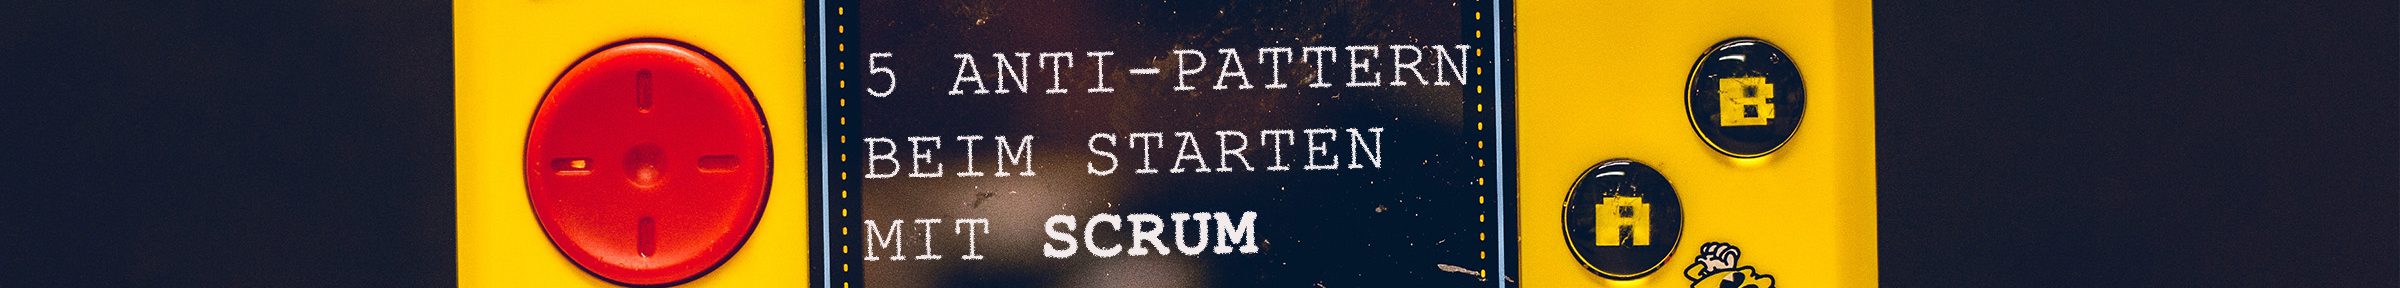 The Scrum Game: 5 Anti-Pattern beim Starten mit Scrum